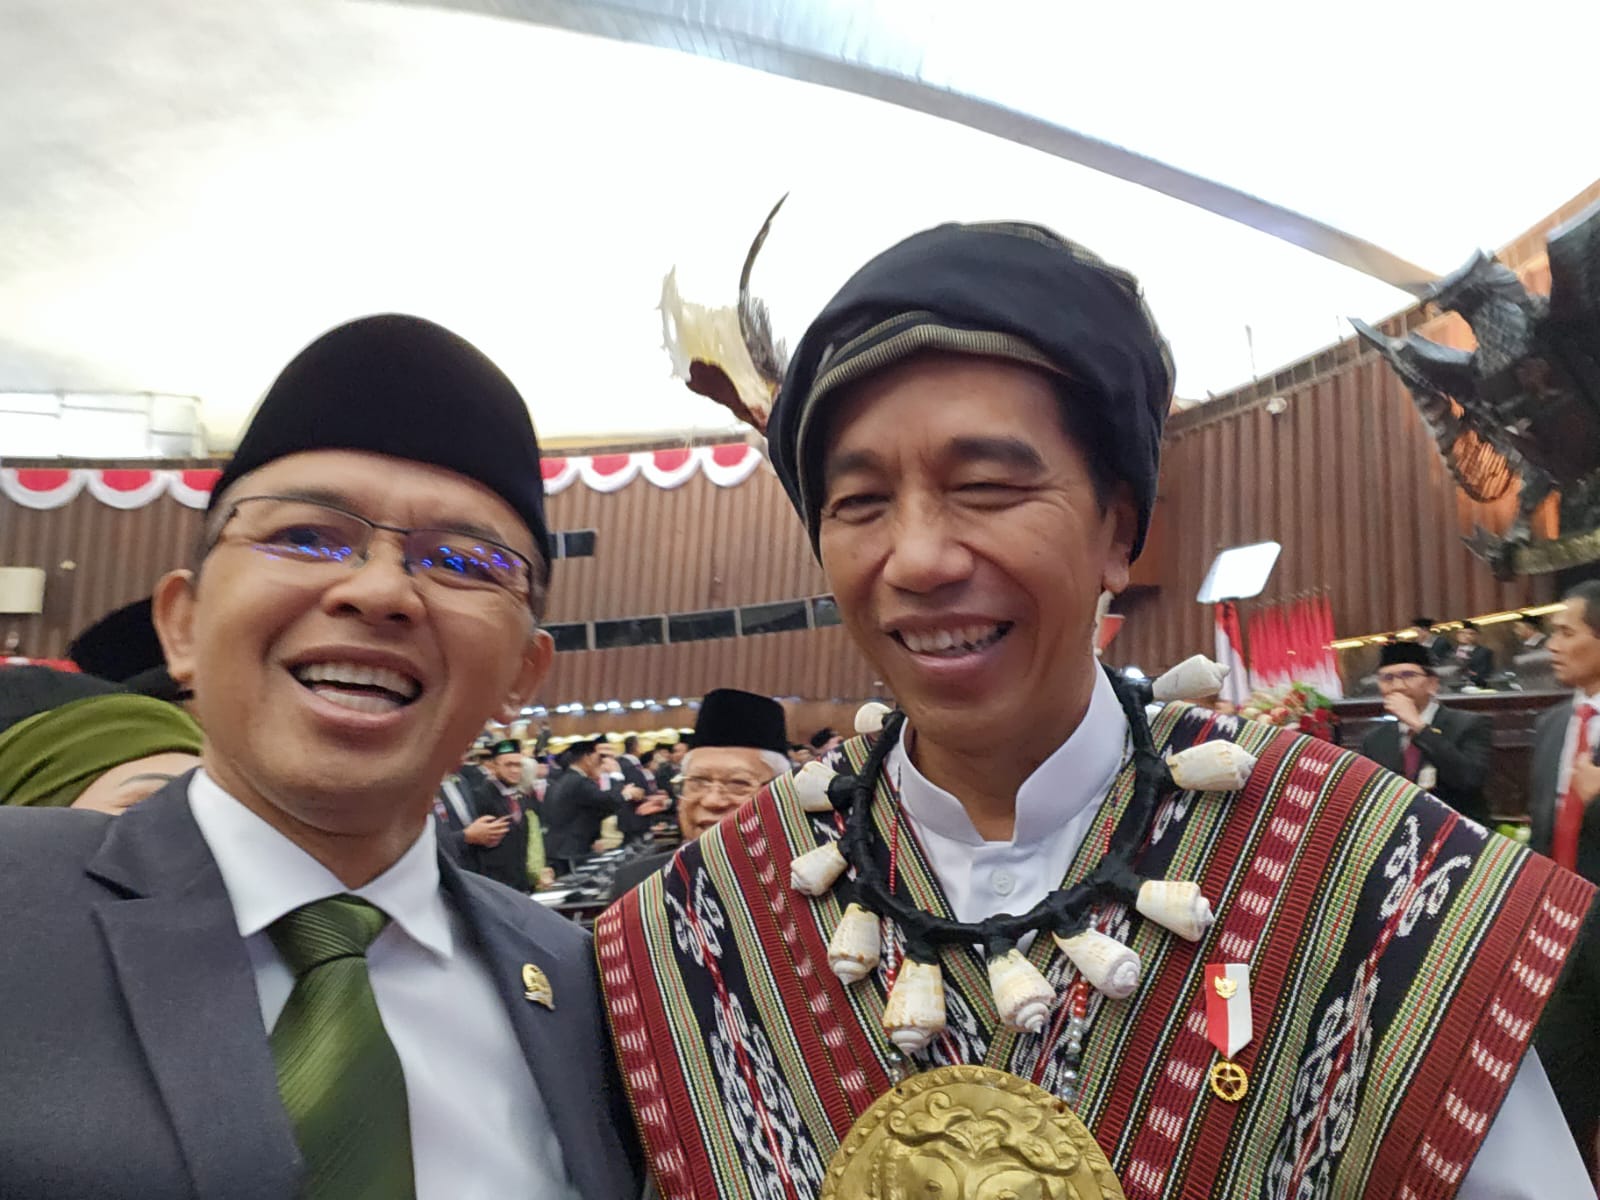 Pidato Jokowi Soal Lunturnya Nilai Budaya Santun, Maman: Topik yang Perlu Direhabilitasi